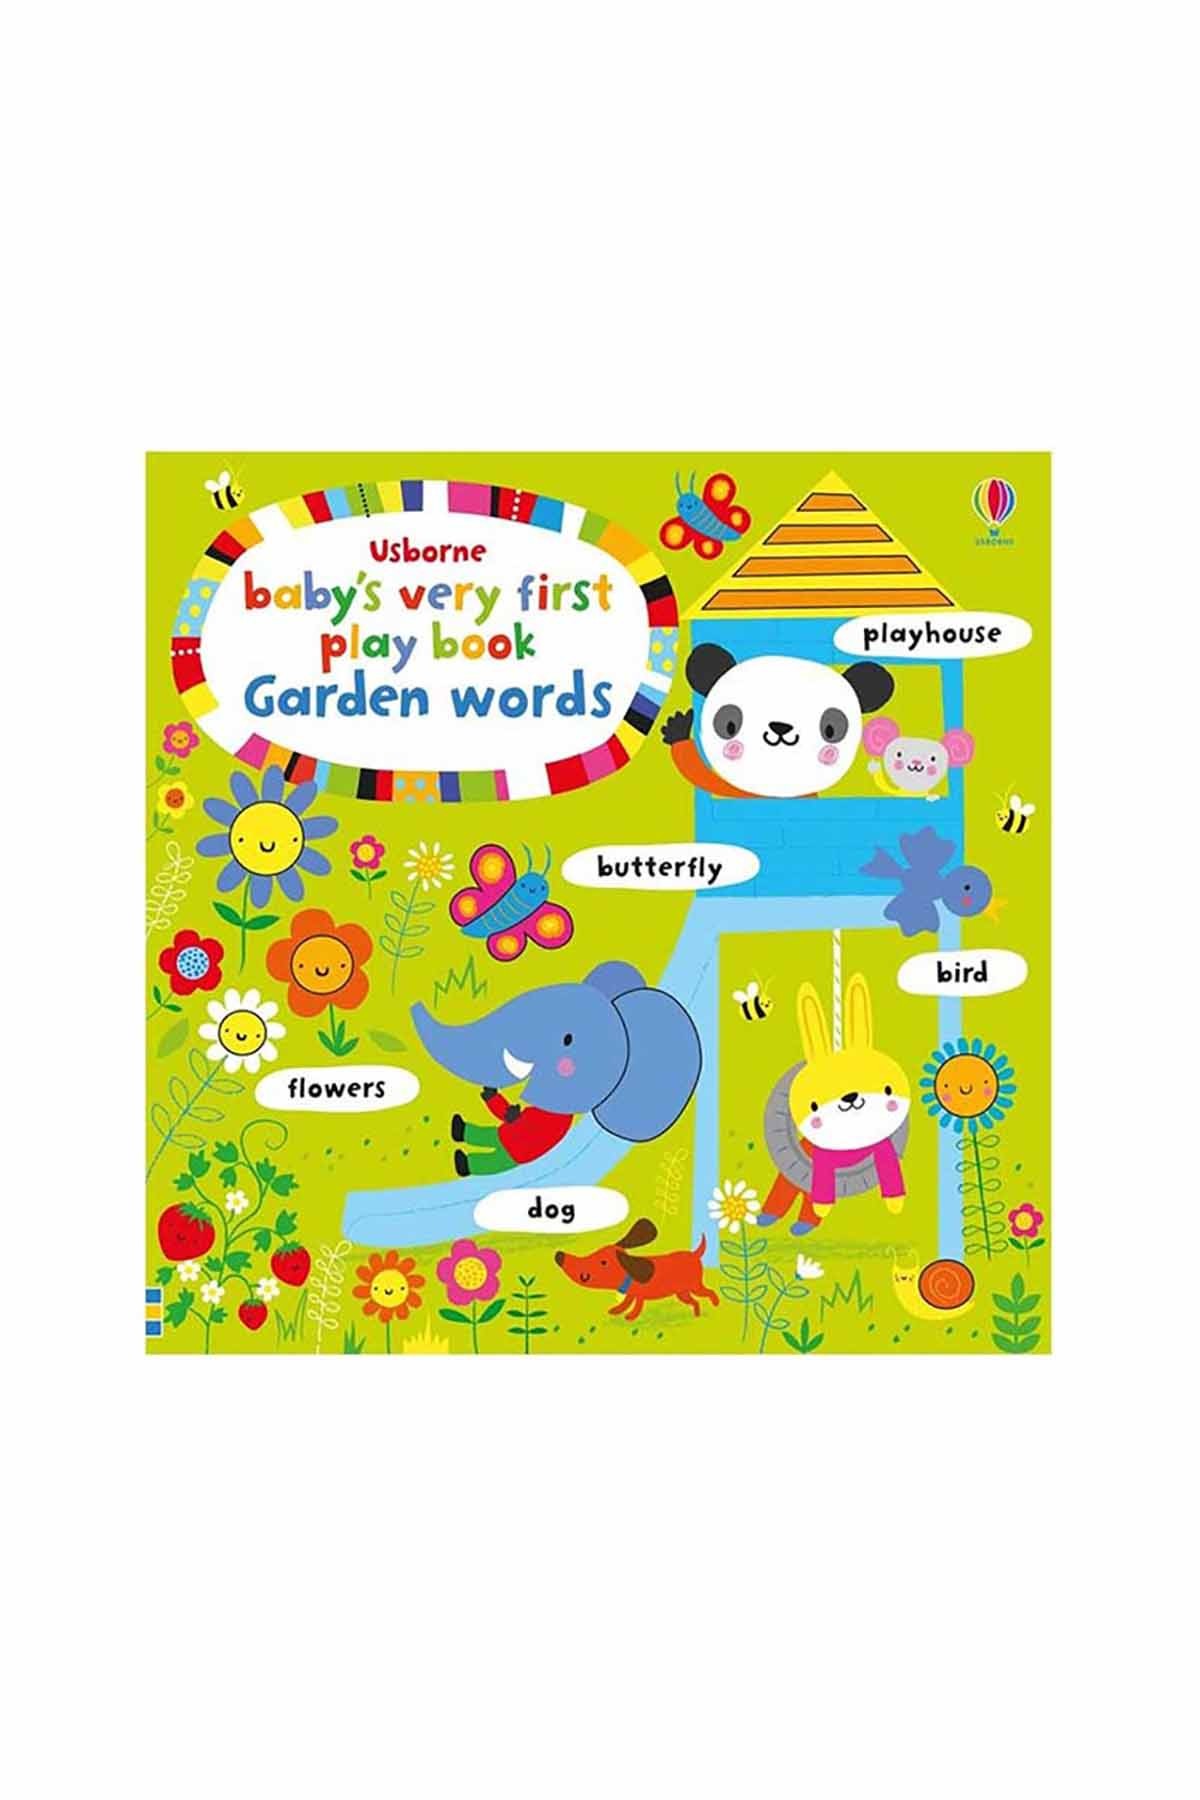 The Usborne Bvf Playbook Garden Words